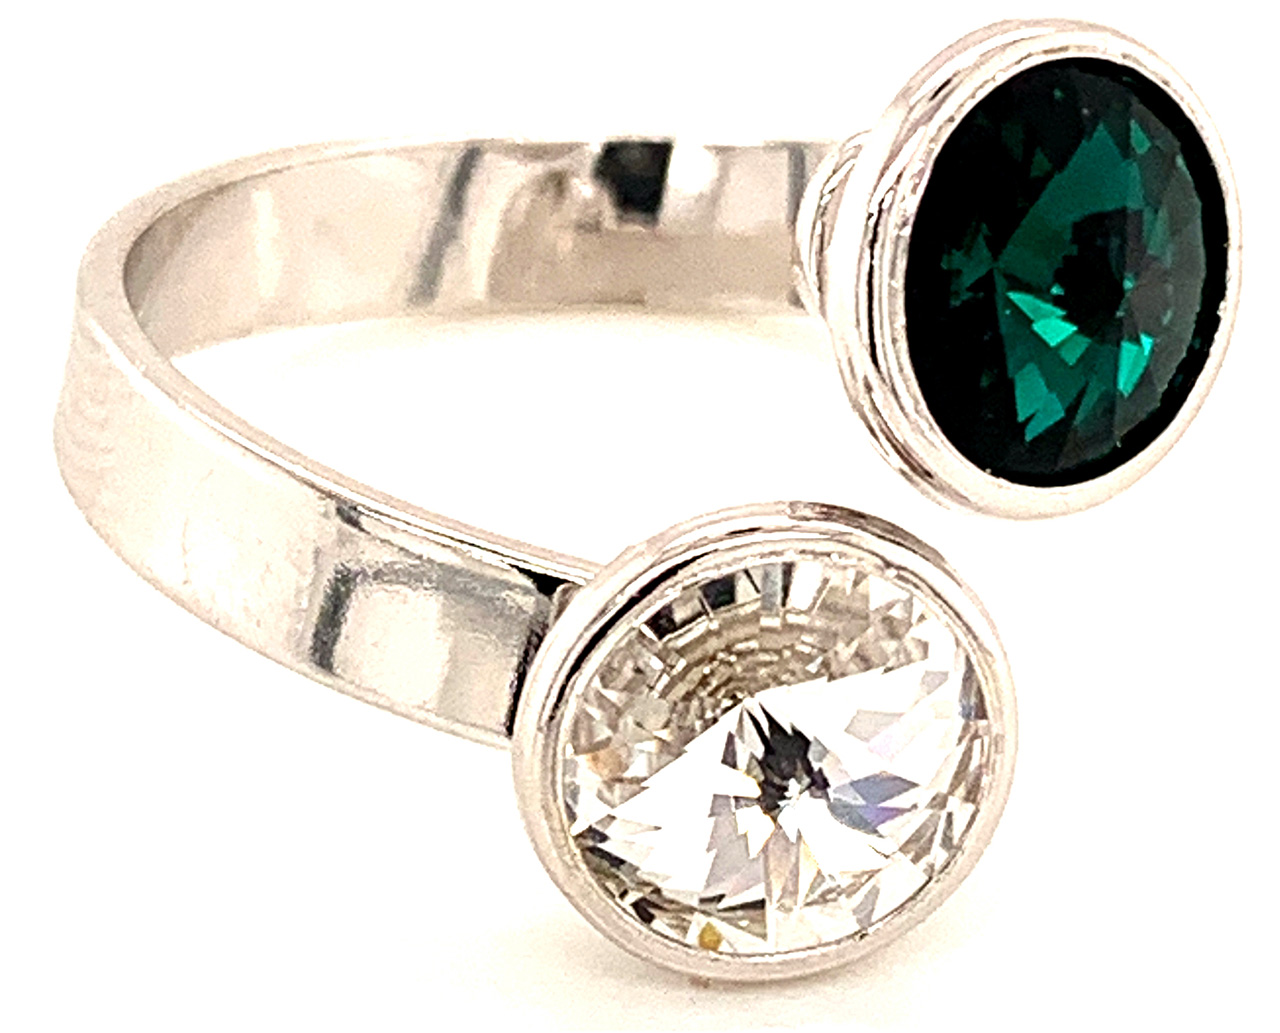 Silber Ring mit 2 Swarovski Crystal (1*Emerald/1*Crystal Clear) 925 Silberfassung größe änderbar gesamt ca. 3,4 Gramm 17 ct handgearbeitet, rhodiniert, handegemacht in Italien AT0578REC